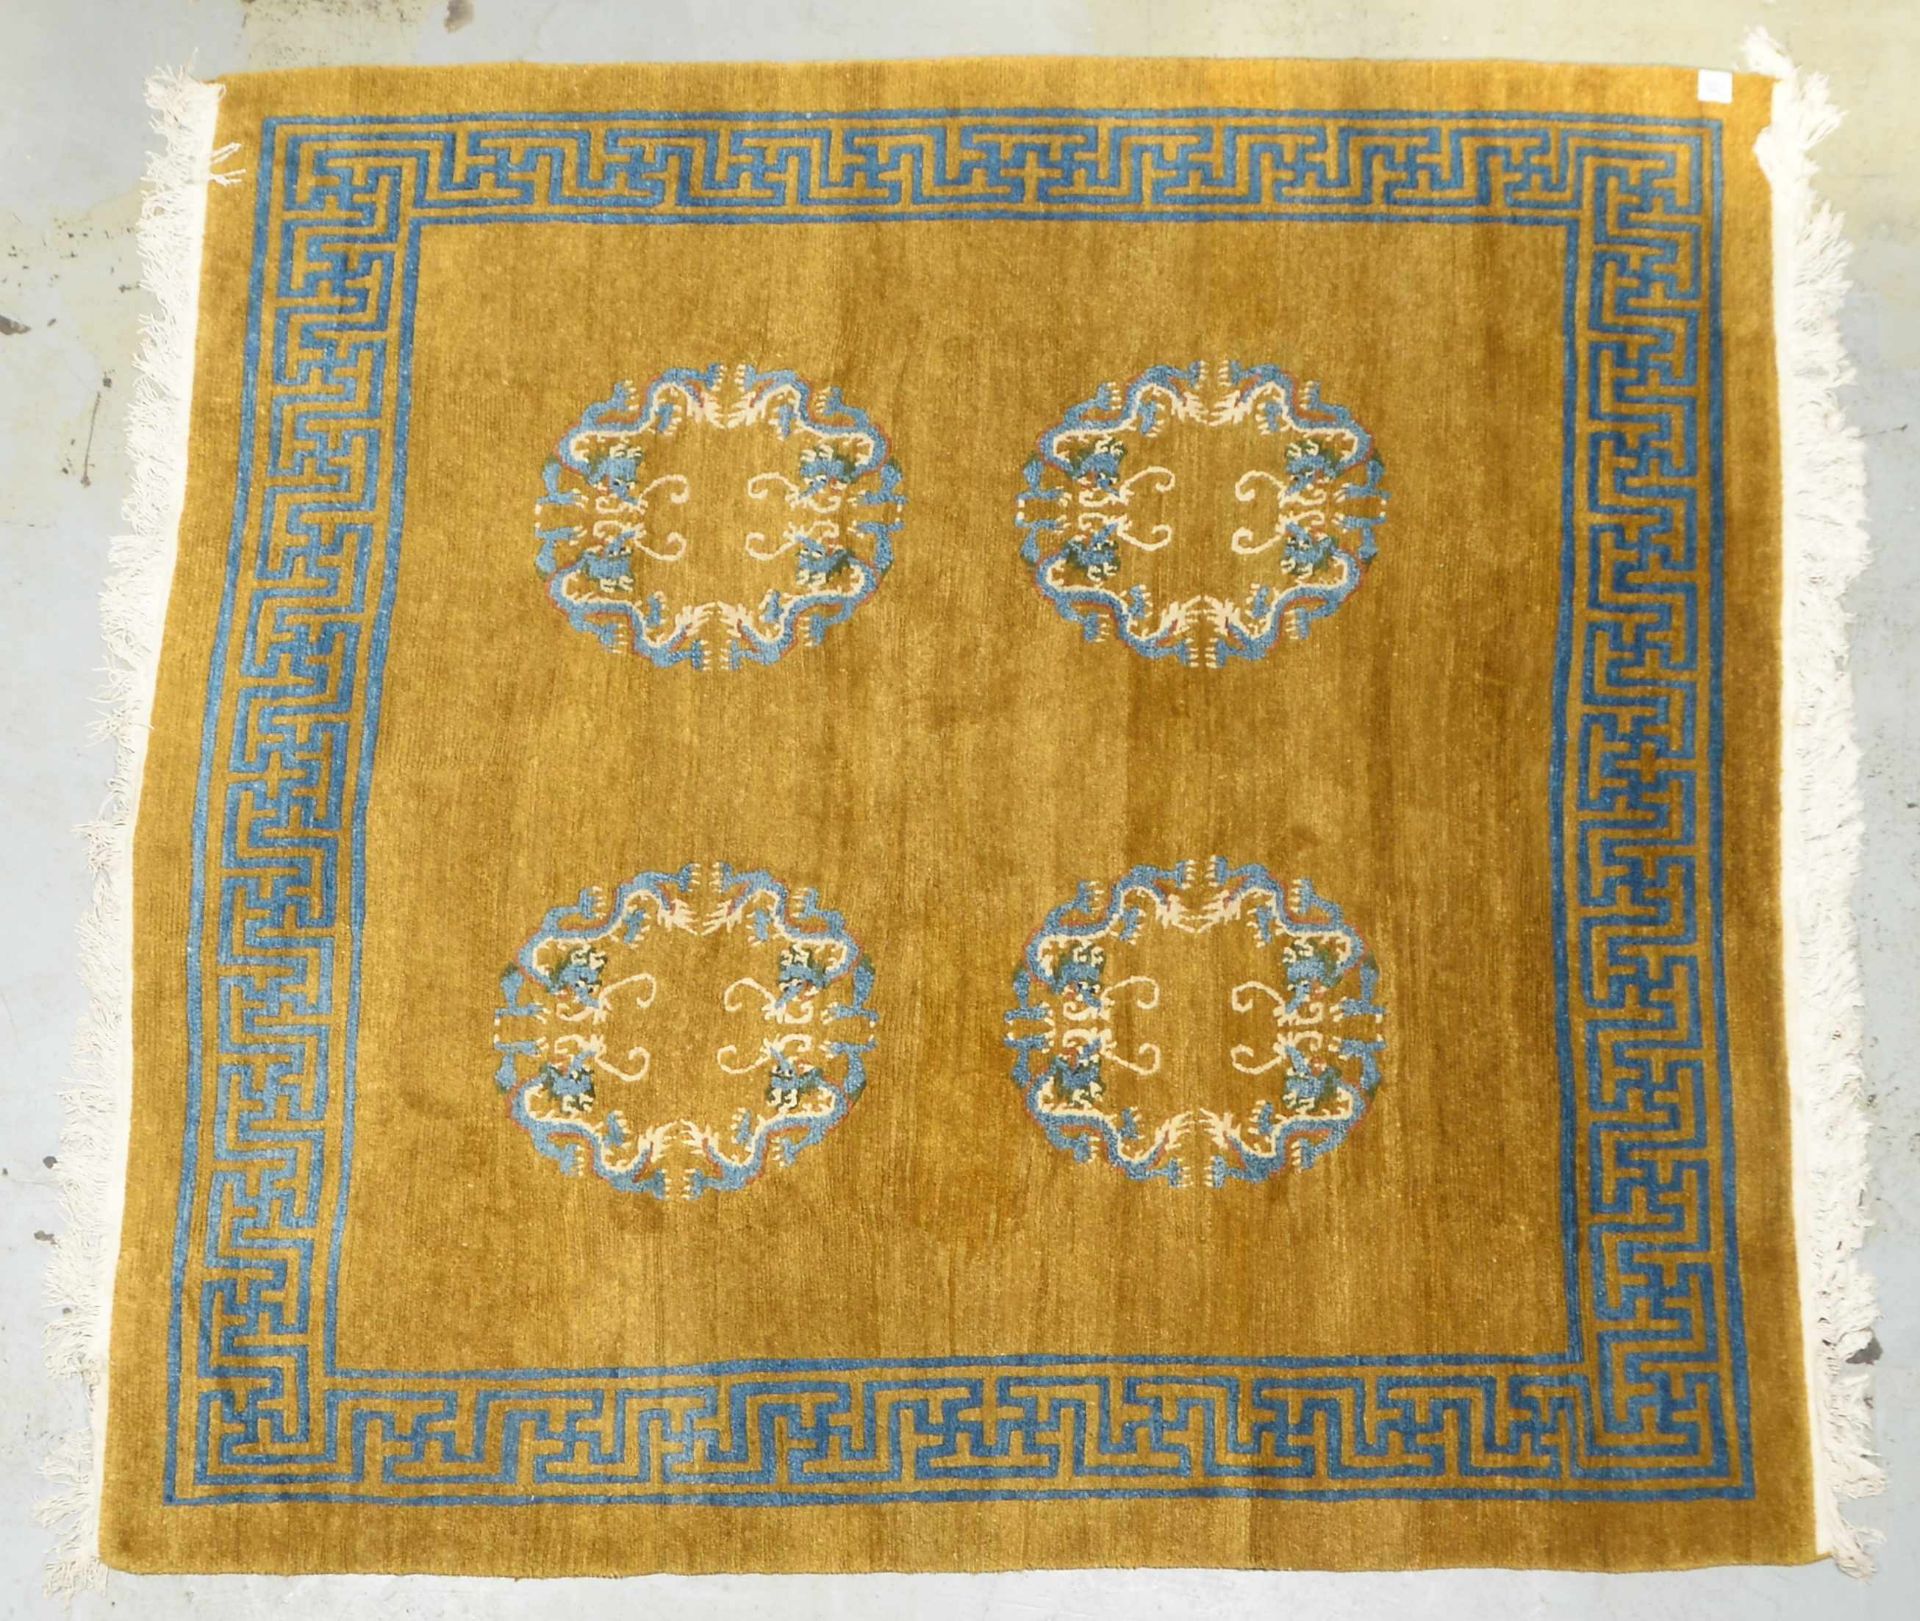 Teppich (China), mit typischen Motiven (-Drachenreigen-) und Maeanderborduere, hochflorig - Flor in  - Bild 2 aus 4